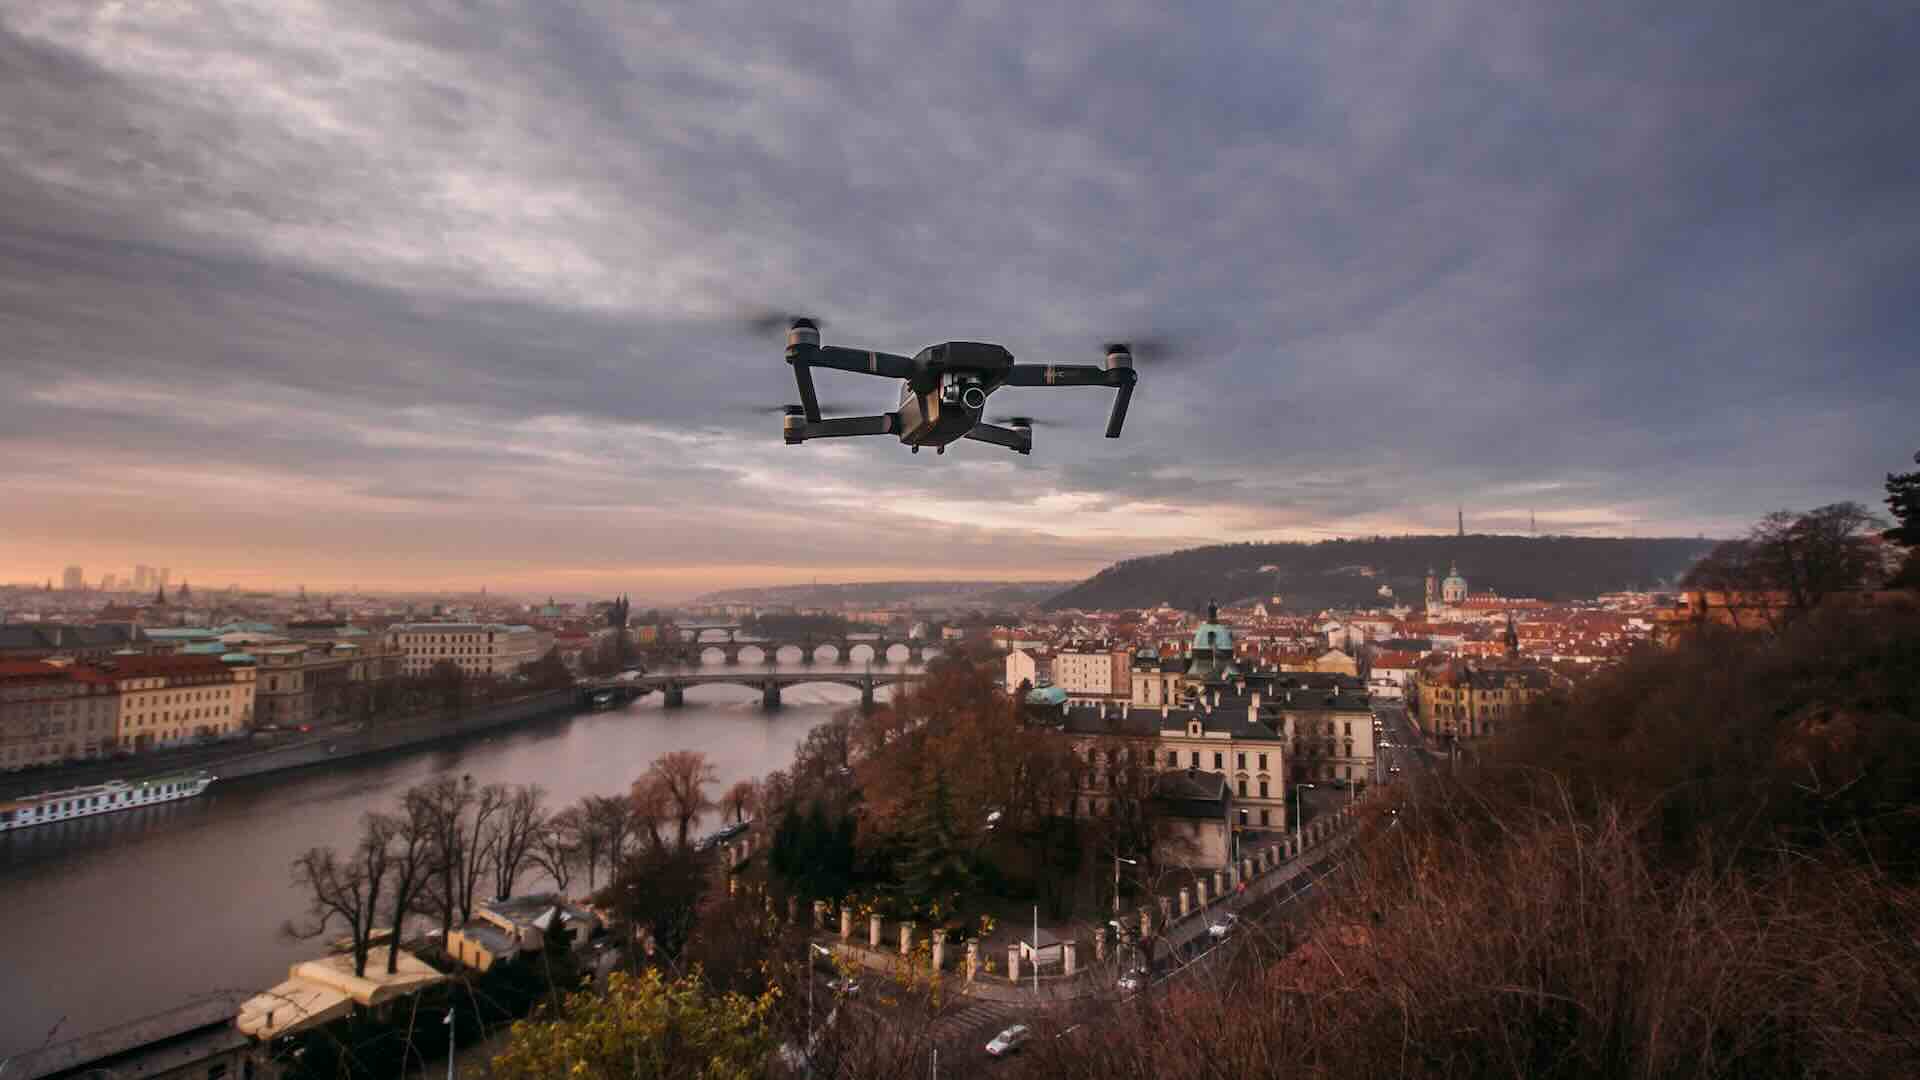 Droni rispetto della privacy, il garante della privacy apre un’istruttoria sui droni a casa Elkann